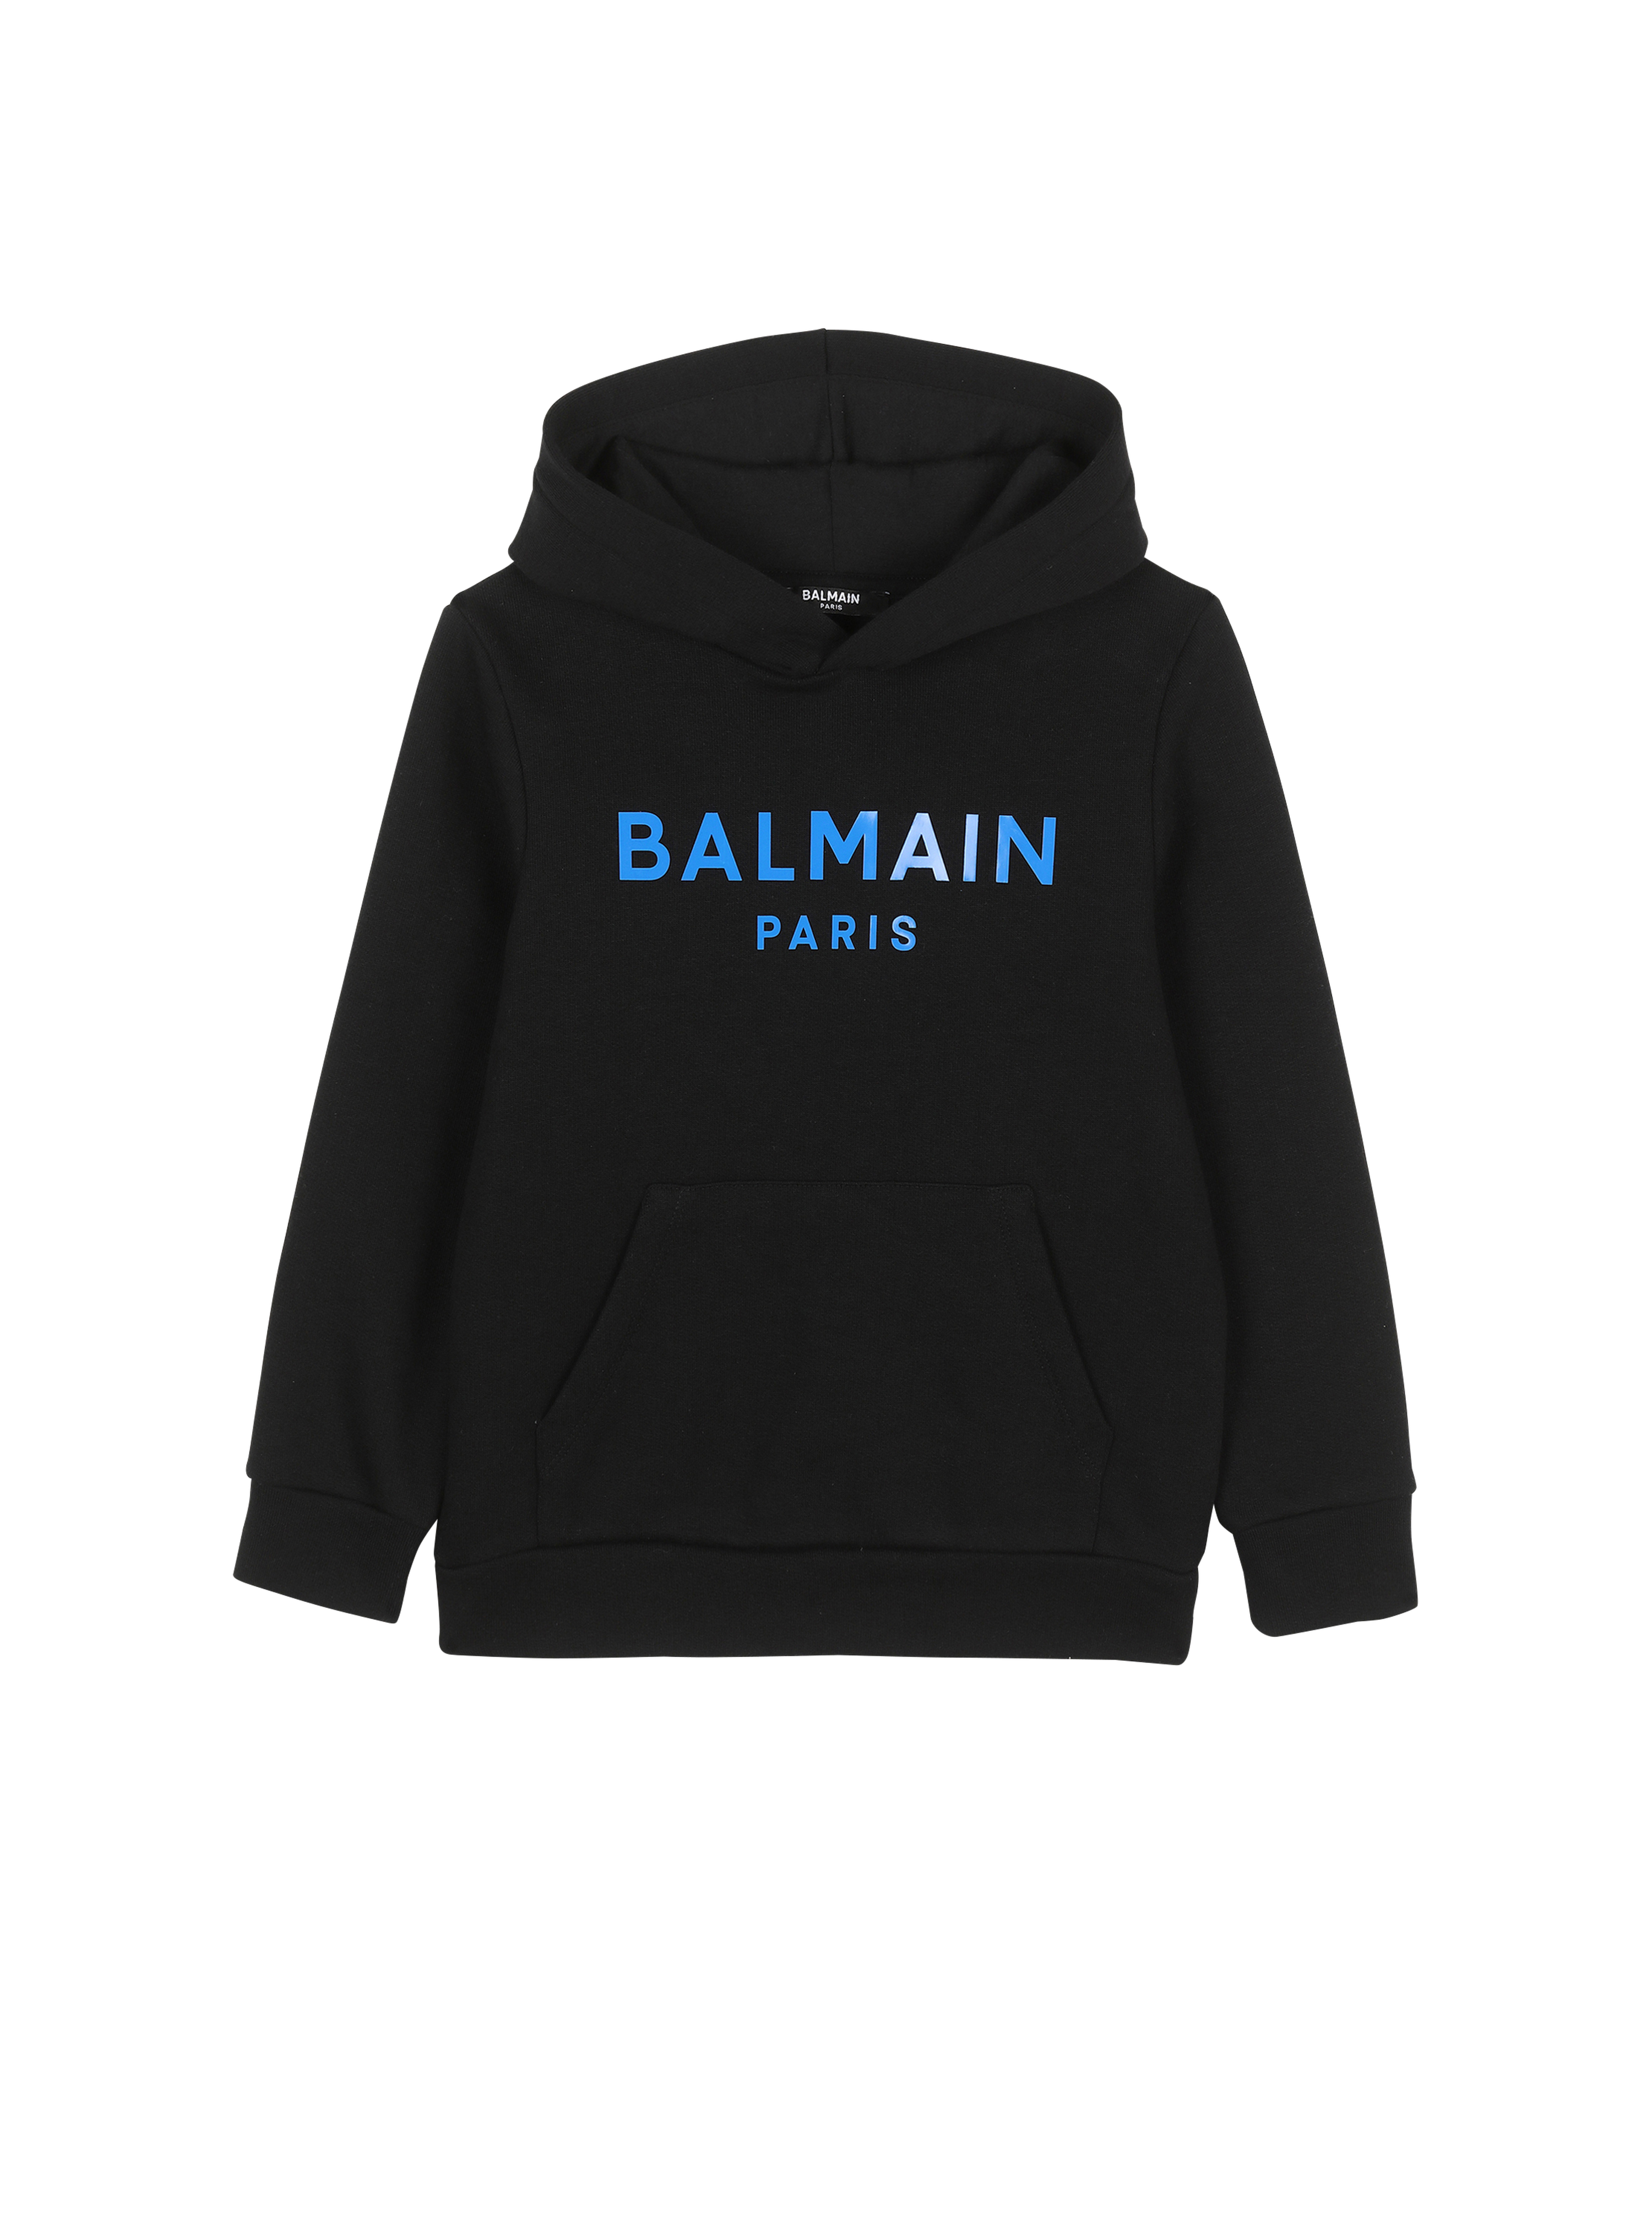 Balmain巴尔曼标志棉质毛衫, black